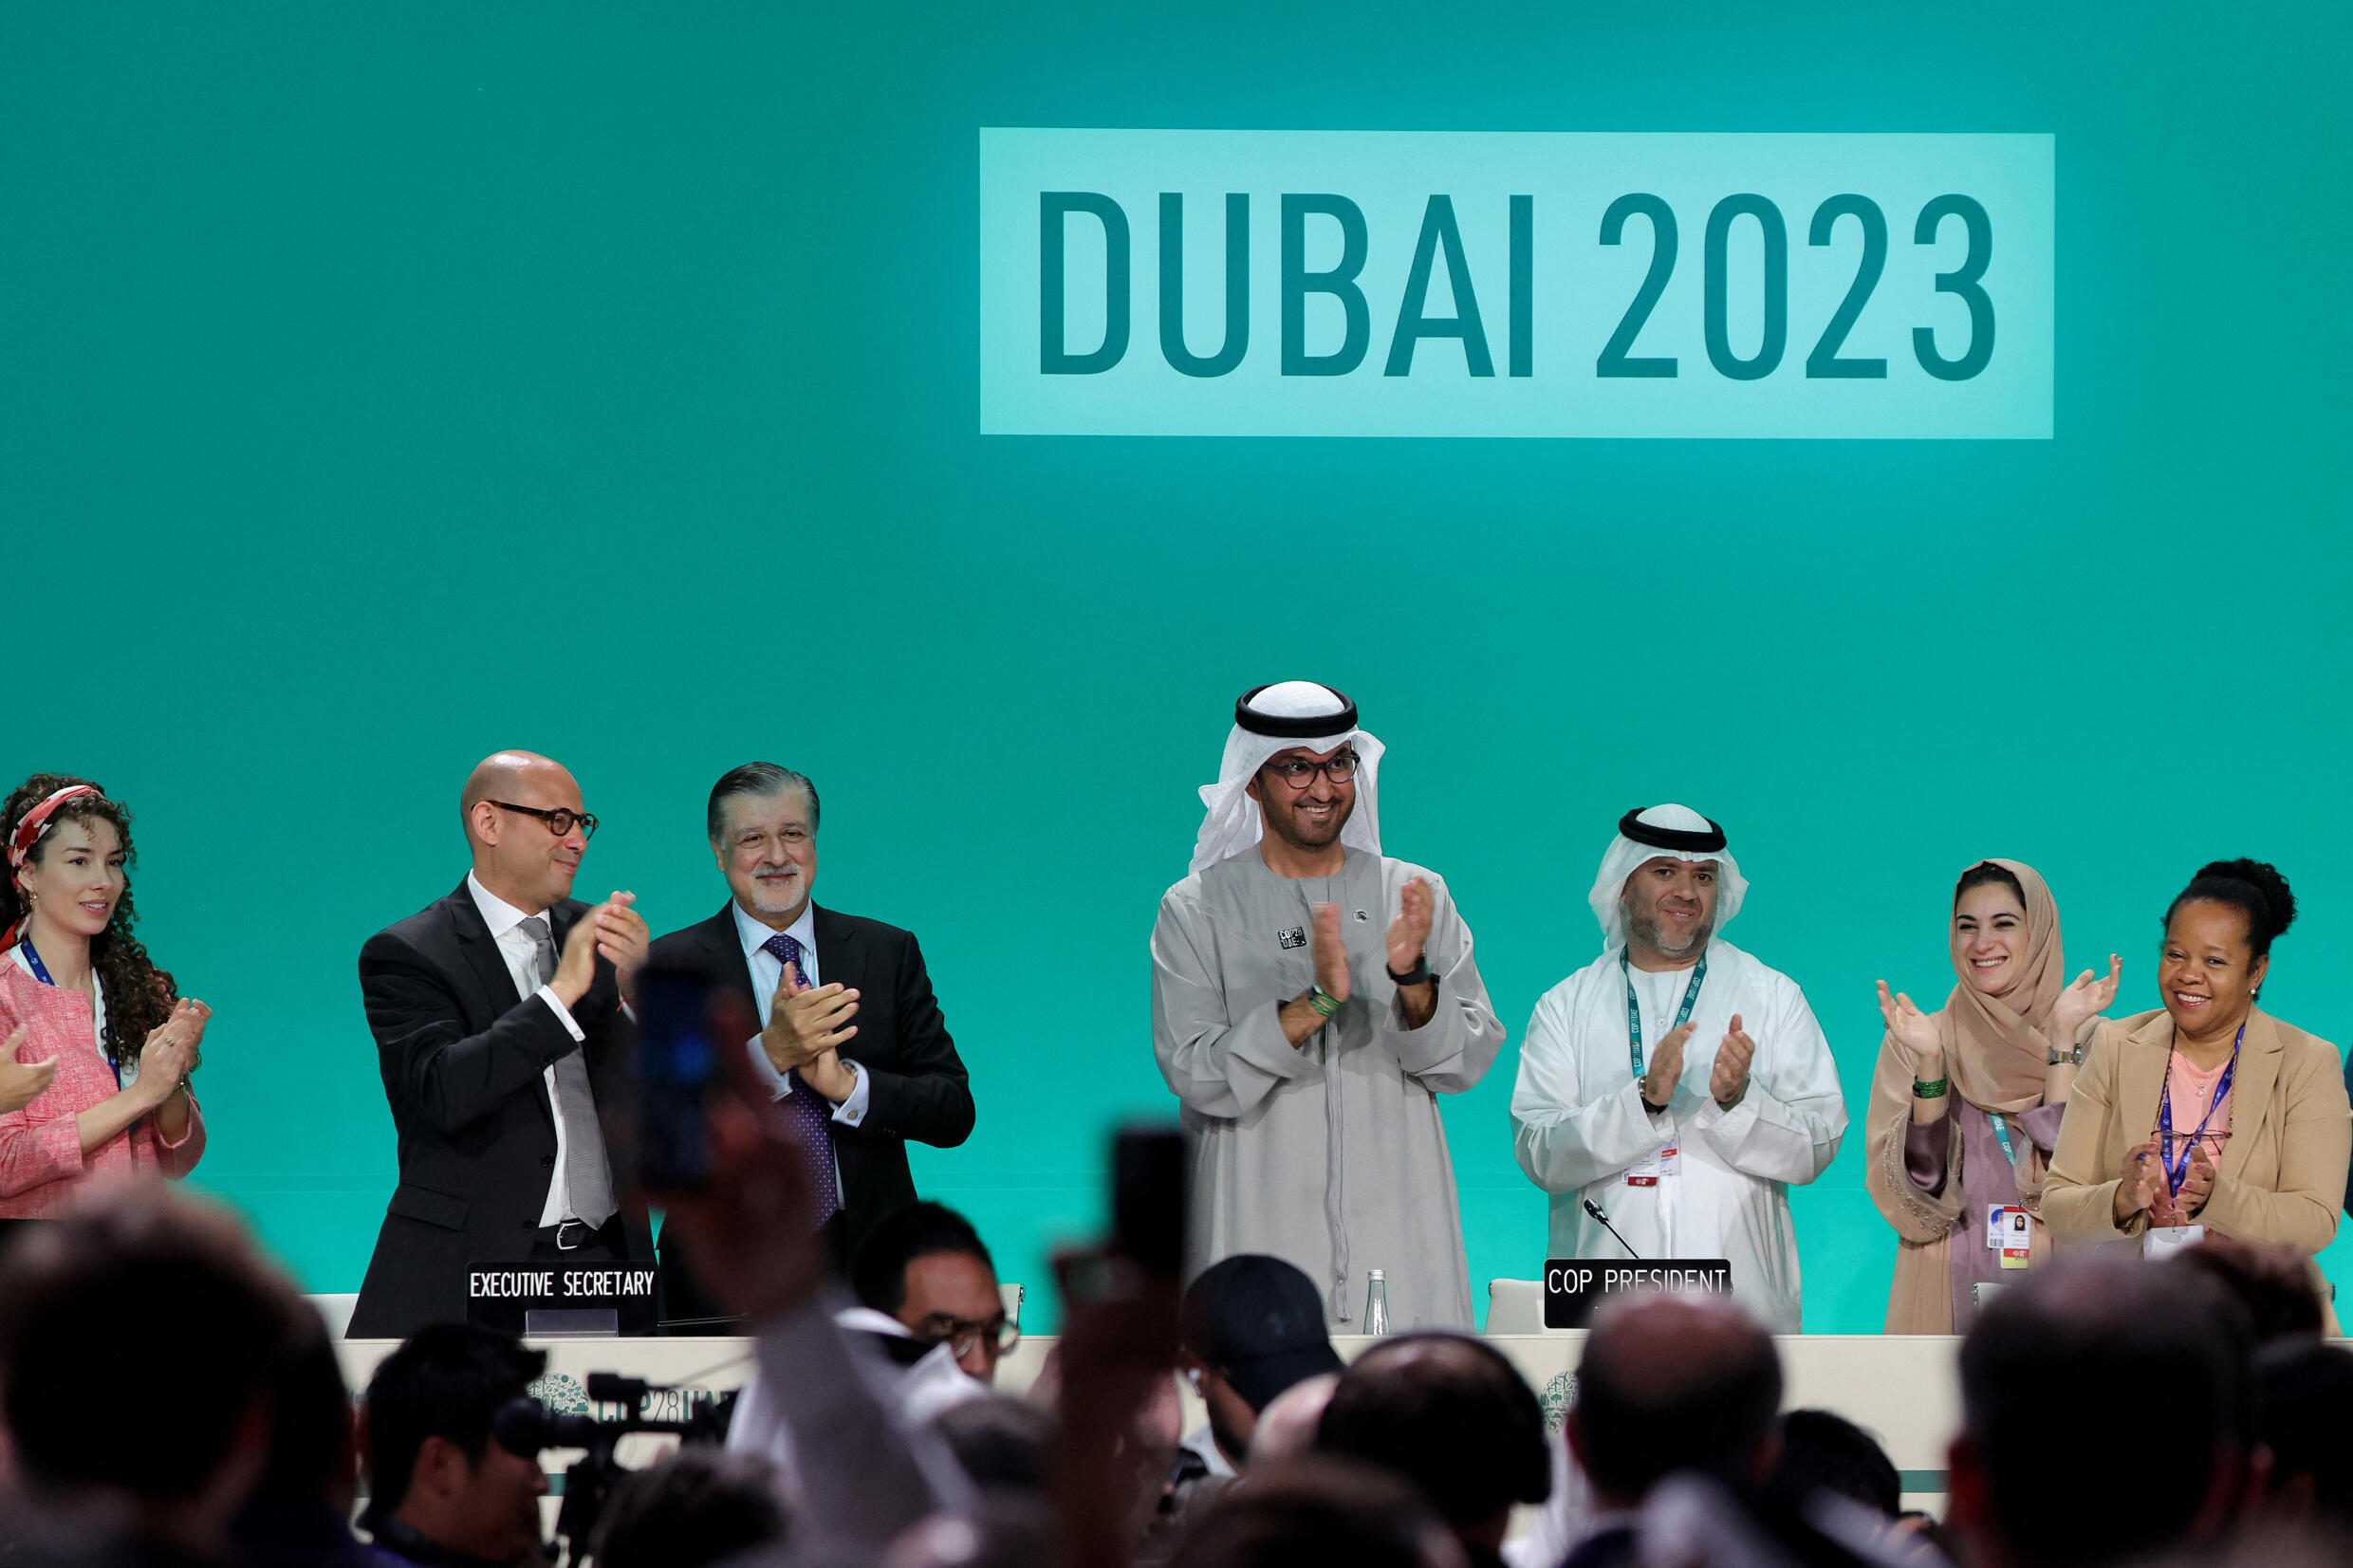 Der Präsident der COP28, Sultan al-Jaber, gab am 13. Dezember 2023 in Dubai die Abstimmung über das endgültige Abkommen über fossile Energieträger bekannt.